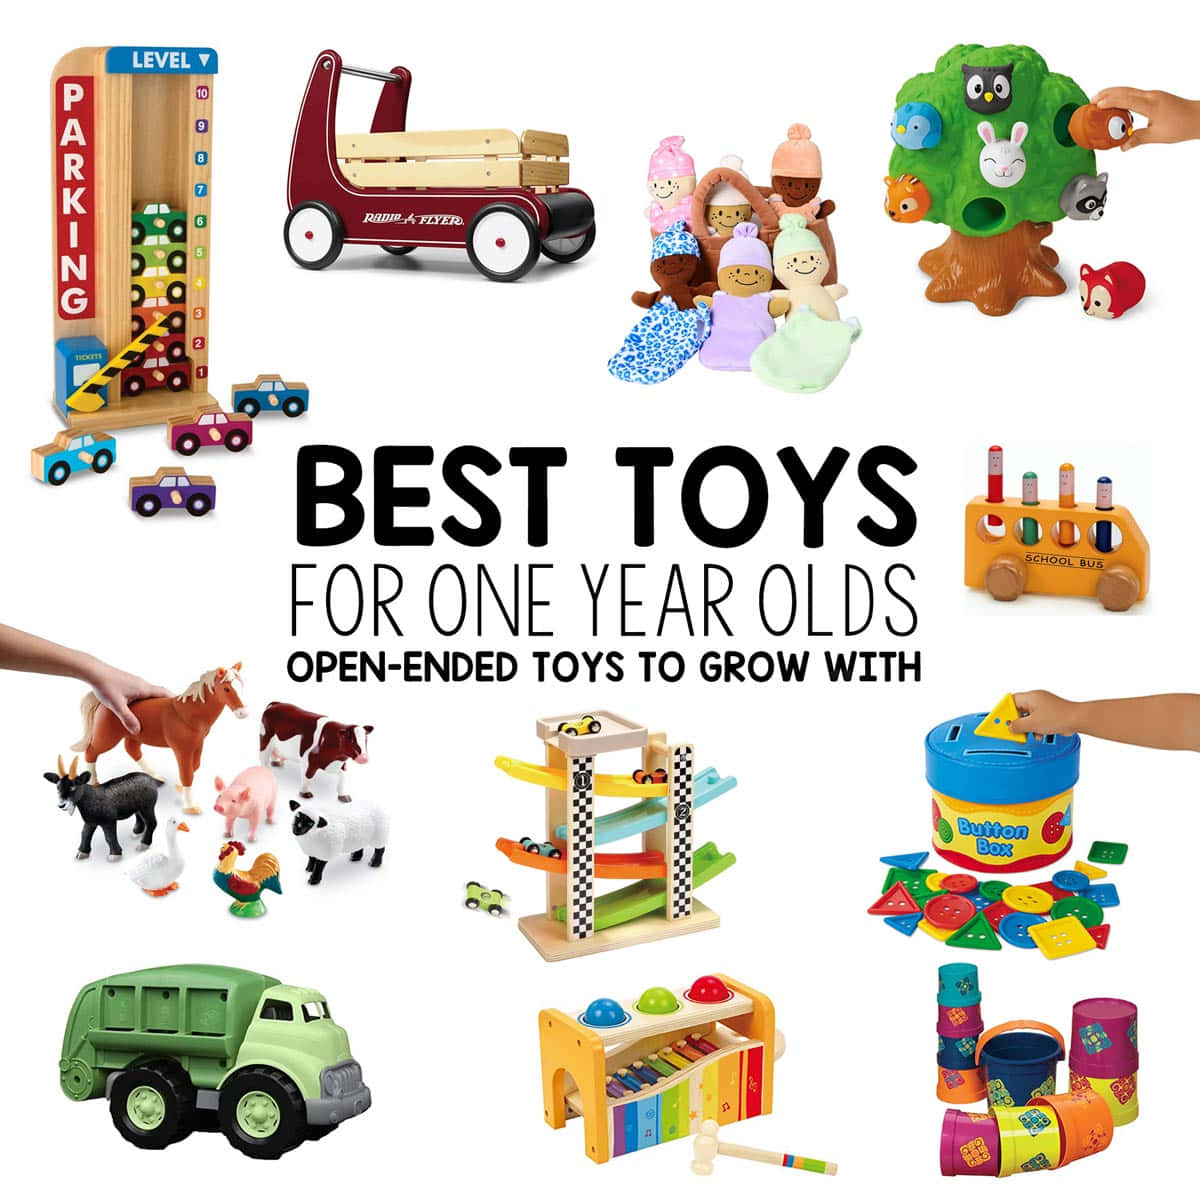 Umacoleção De Brinquedos Coloridos E Divertidos, Perfeita Para Qualquer Criança!